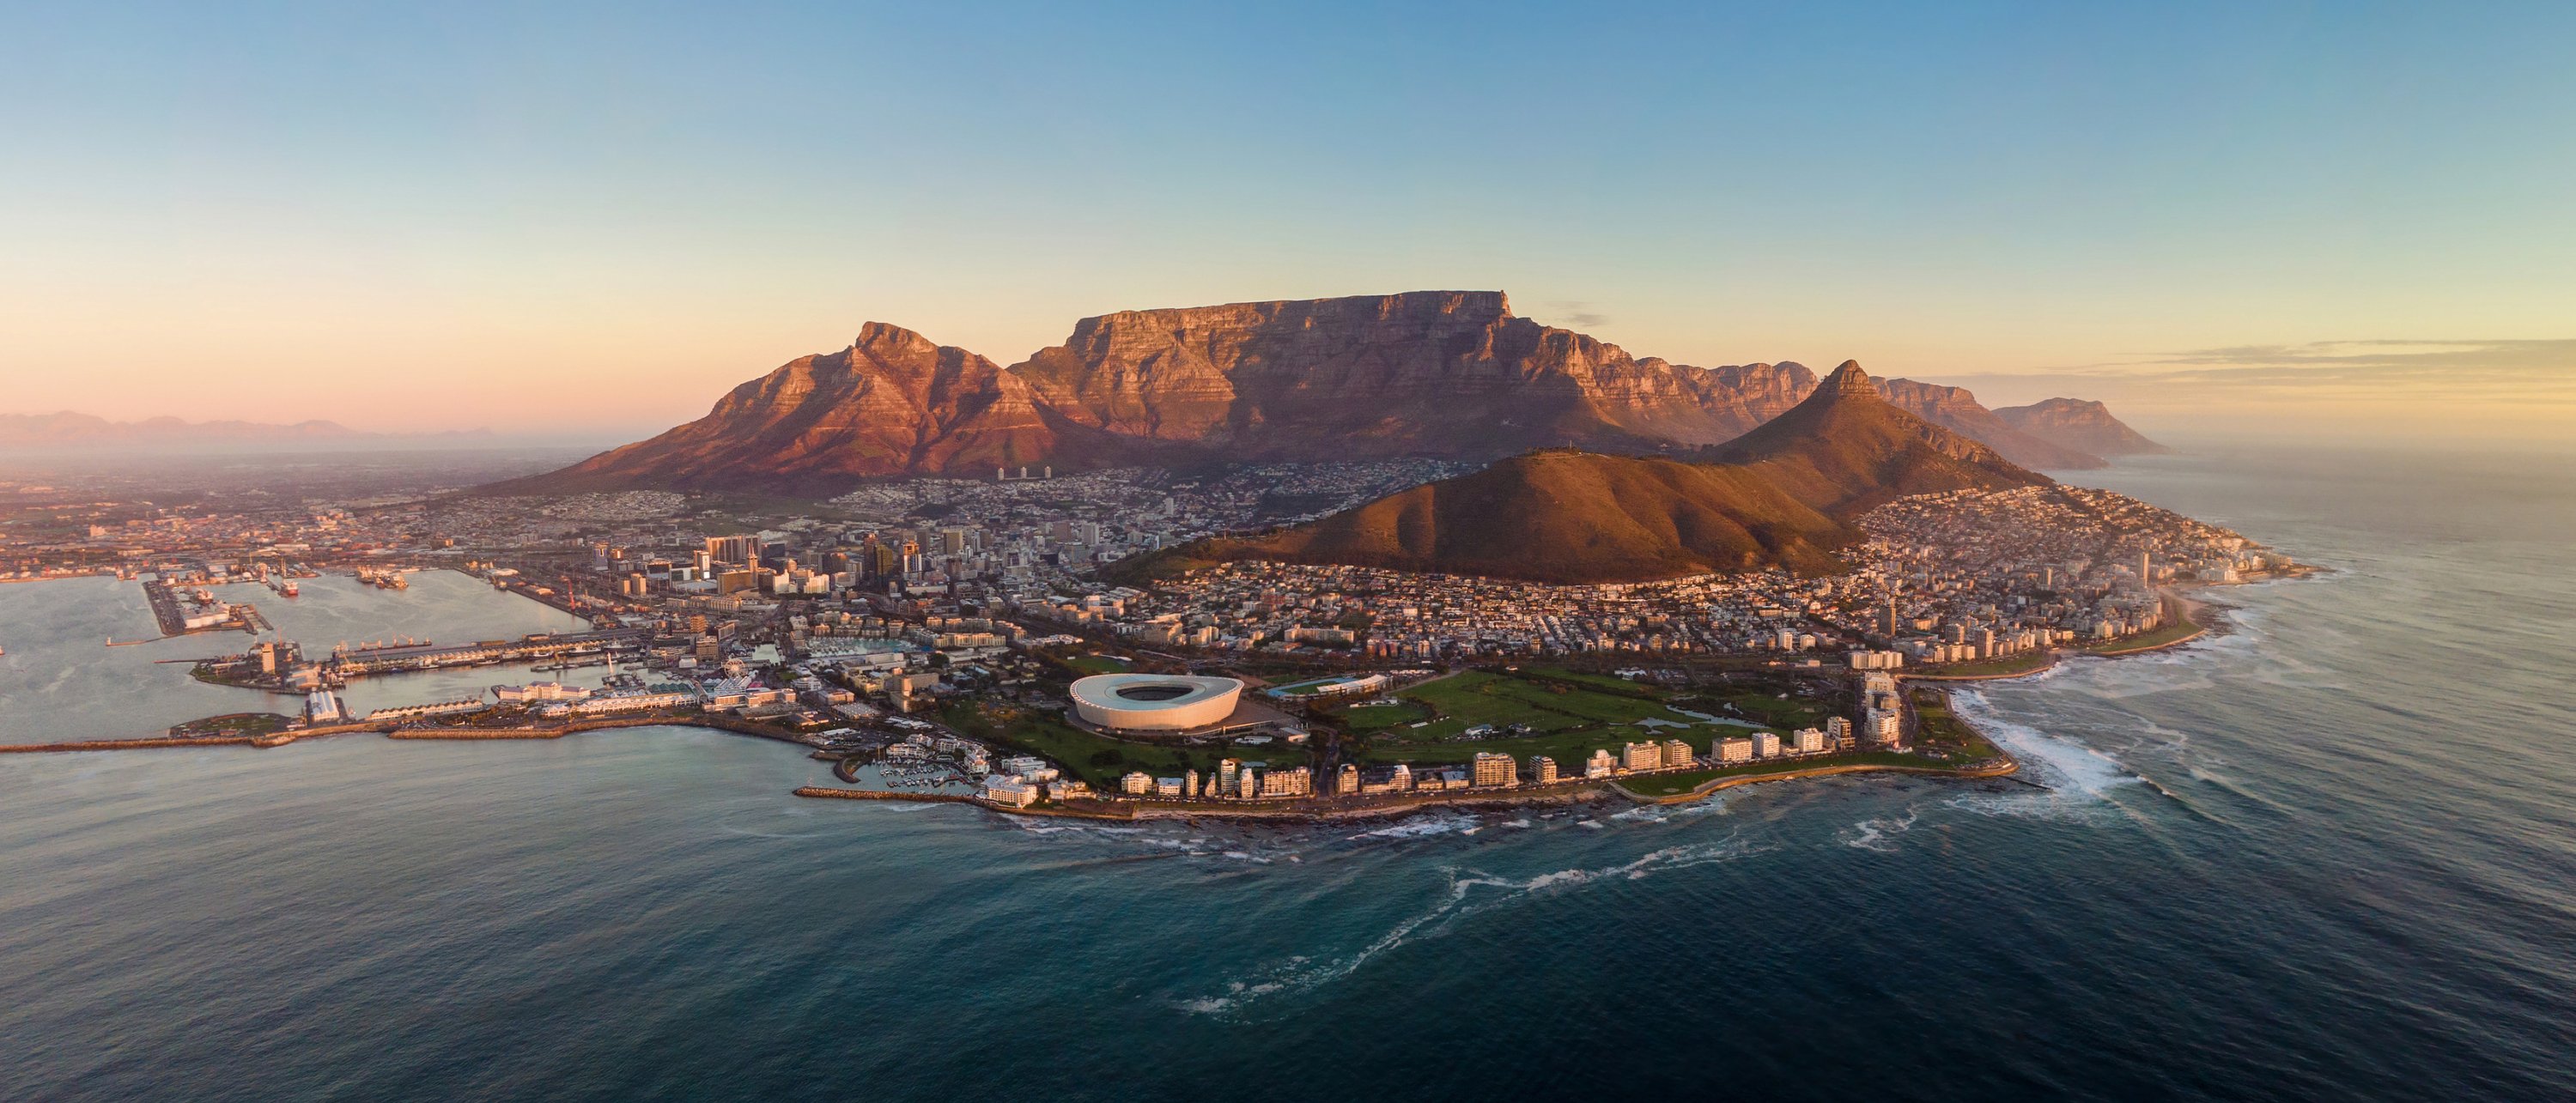 Picture of Cape Town's coastline